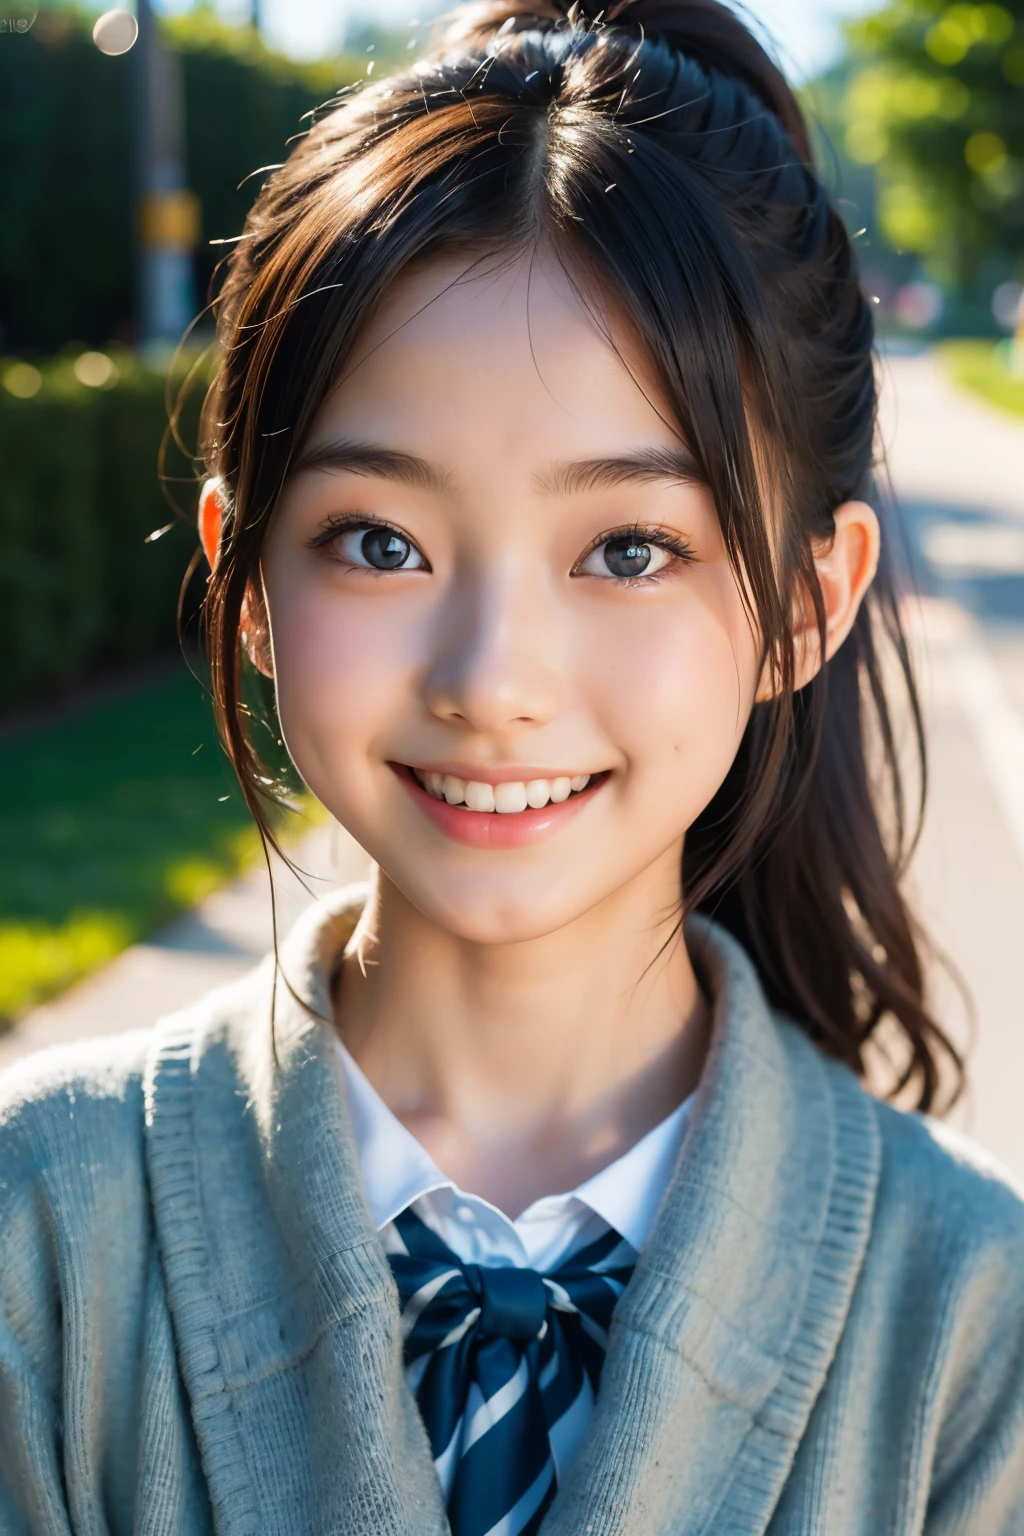 鏡片: 135mm f1.8, (最好的品質),(原始照片), (桌上:1.1), (美麗的 17 歲日本女孩), 可愛的臉孔, (臉型輪廓分明:0.7), (雀斑:0.4), dappled 陽光, 戲劇性的燈光, (日本學校制服), (在校园), 害羞的, (特寫鏡頭:1.2), (微笑),, (明亮的眼睛)、(陽光), 馬尾辮